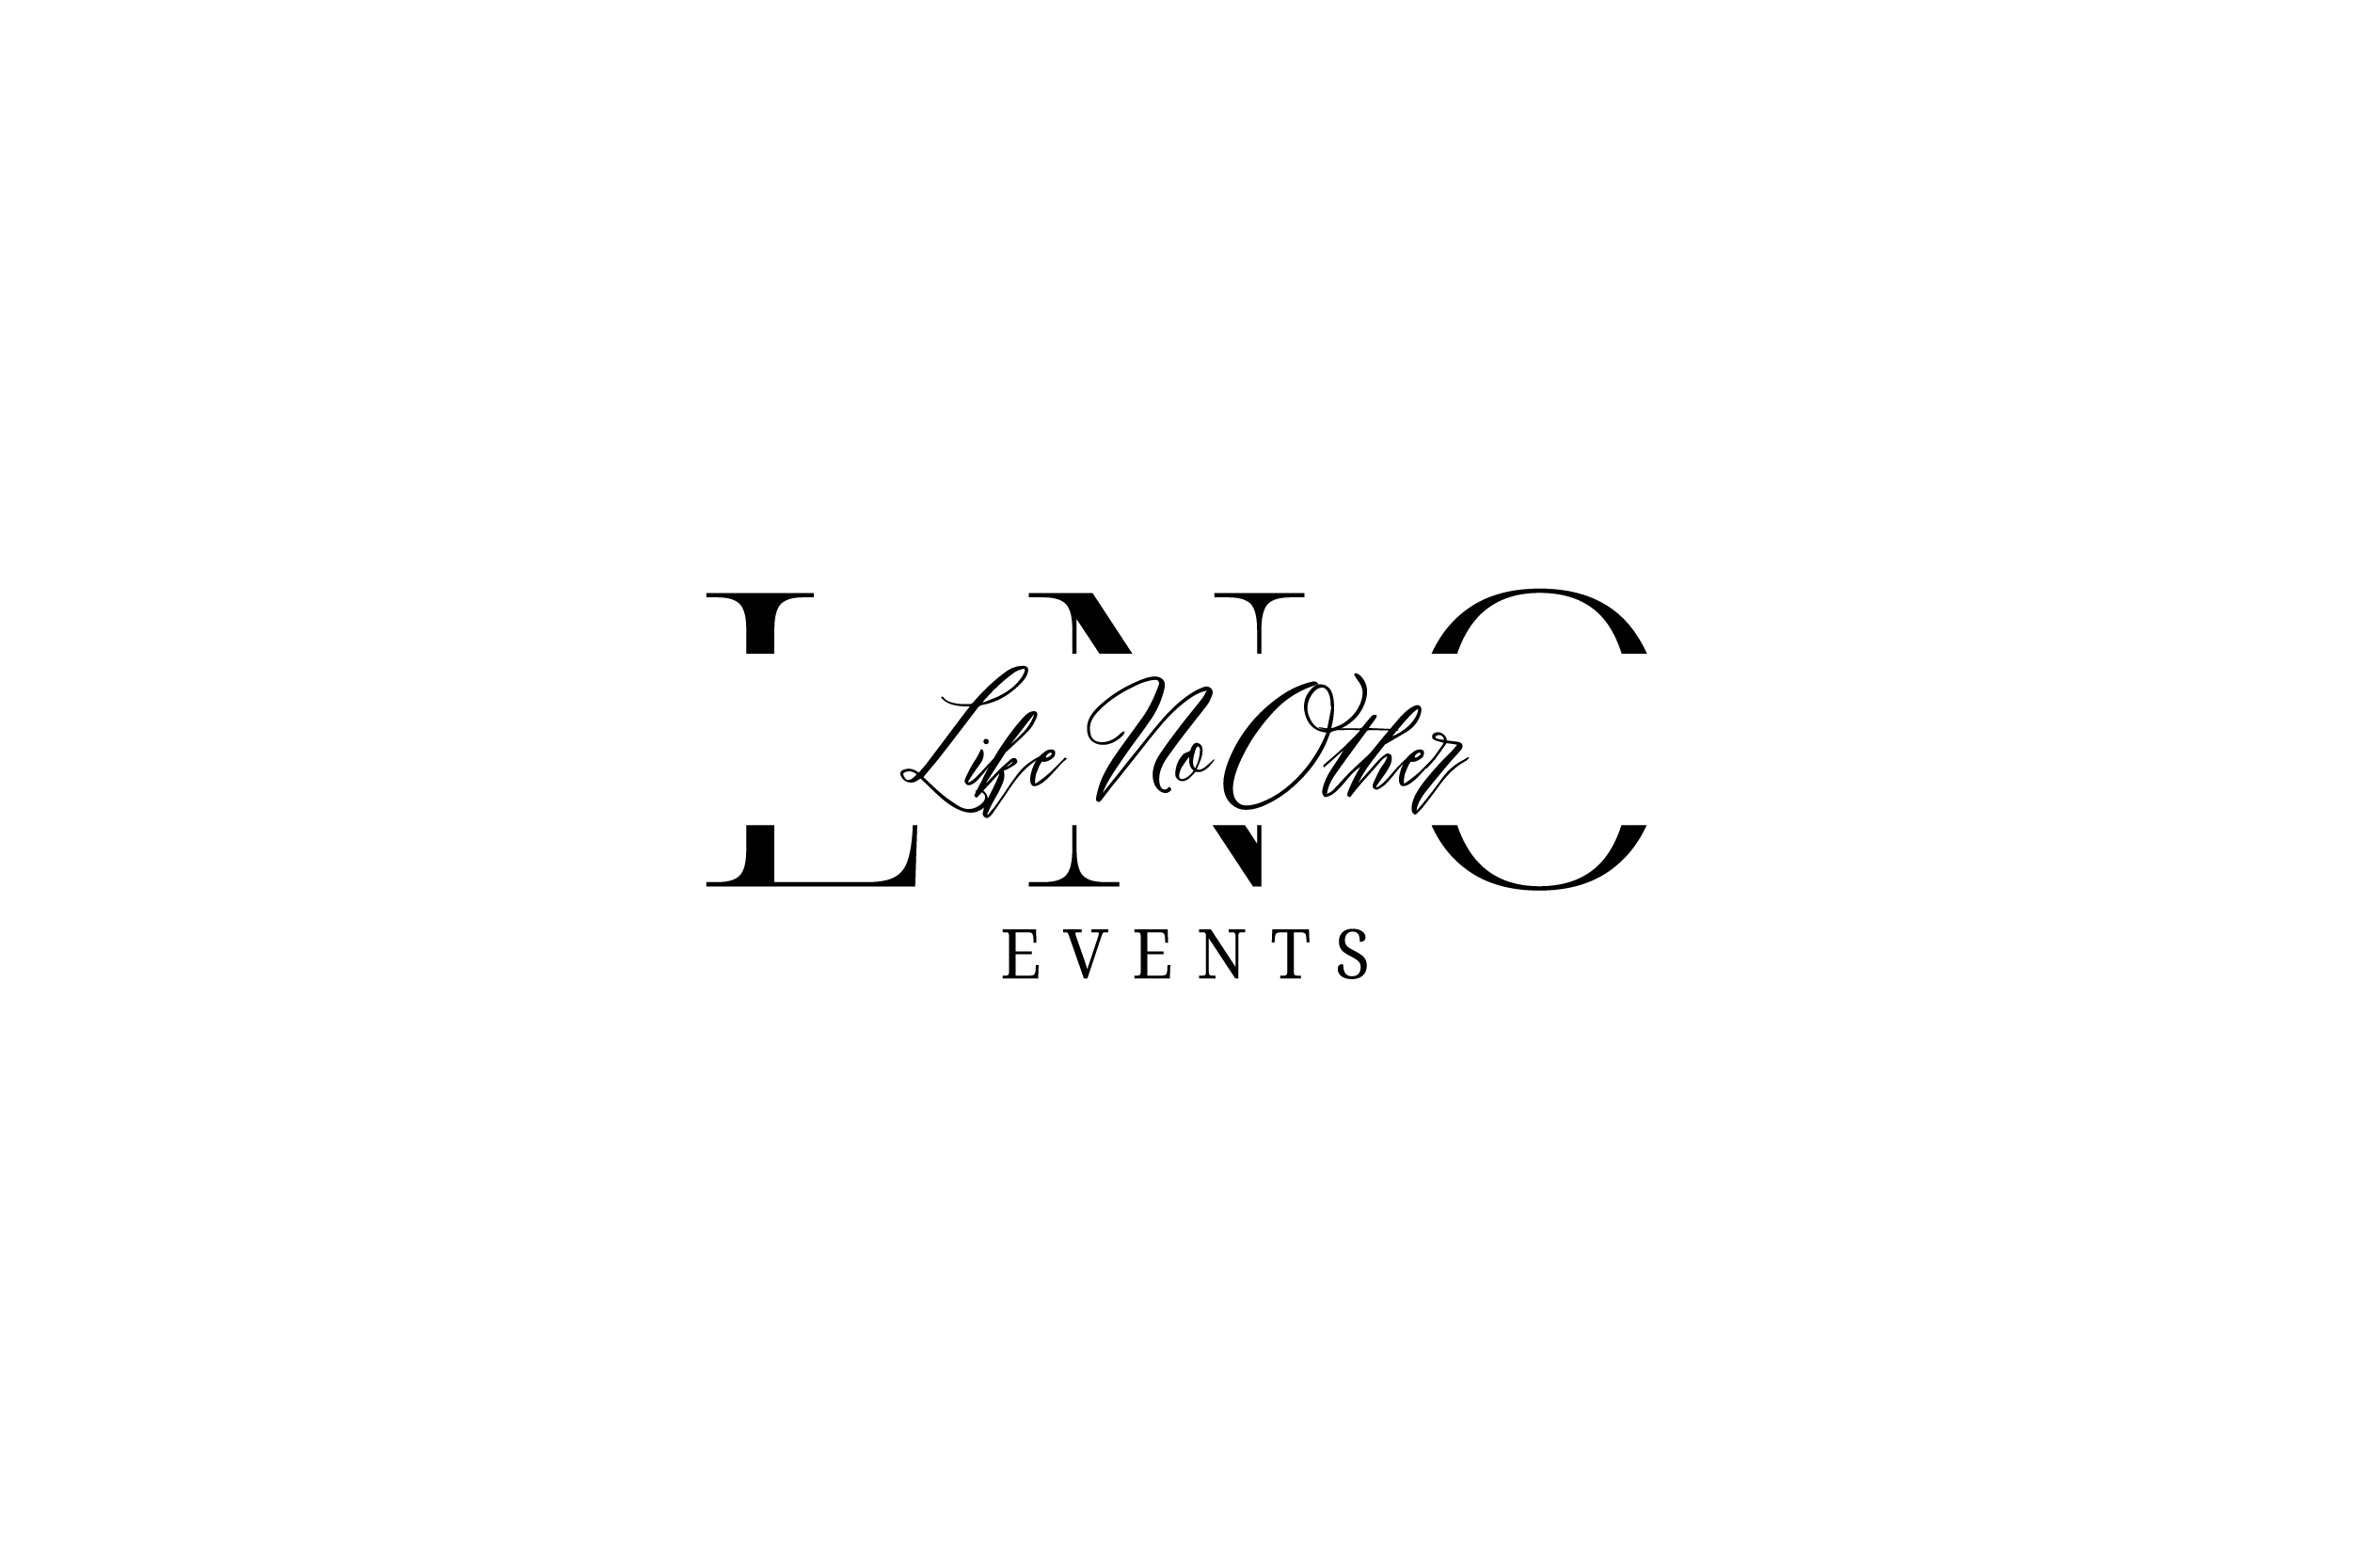 LNO Events and rentals